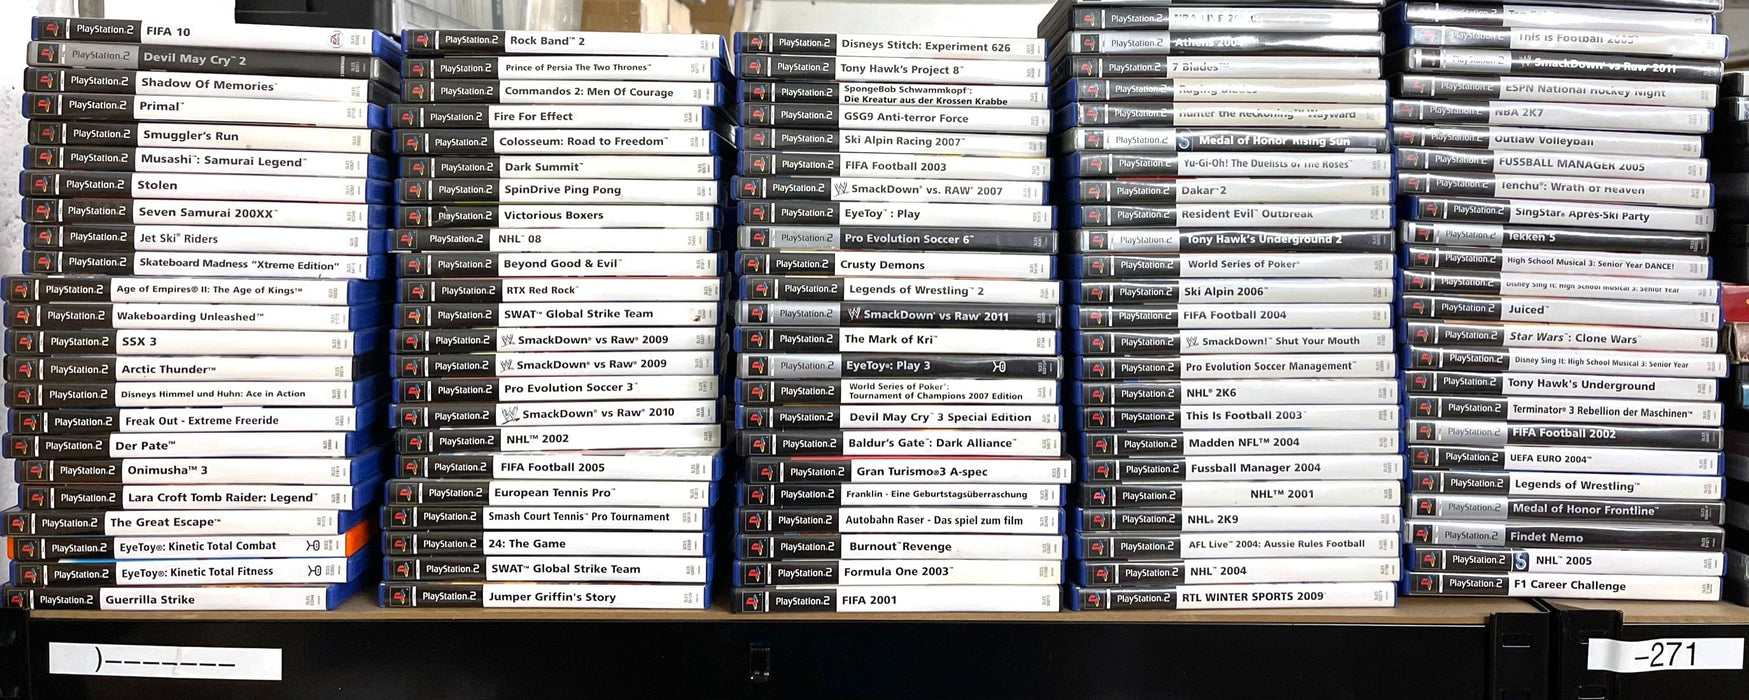 Glaciergames PlayStation 2 Game Tony Hawk's American Wasteland PlayStation 2 (Nr.384)